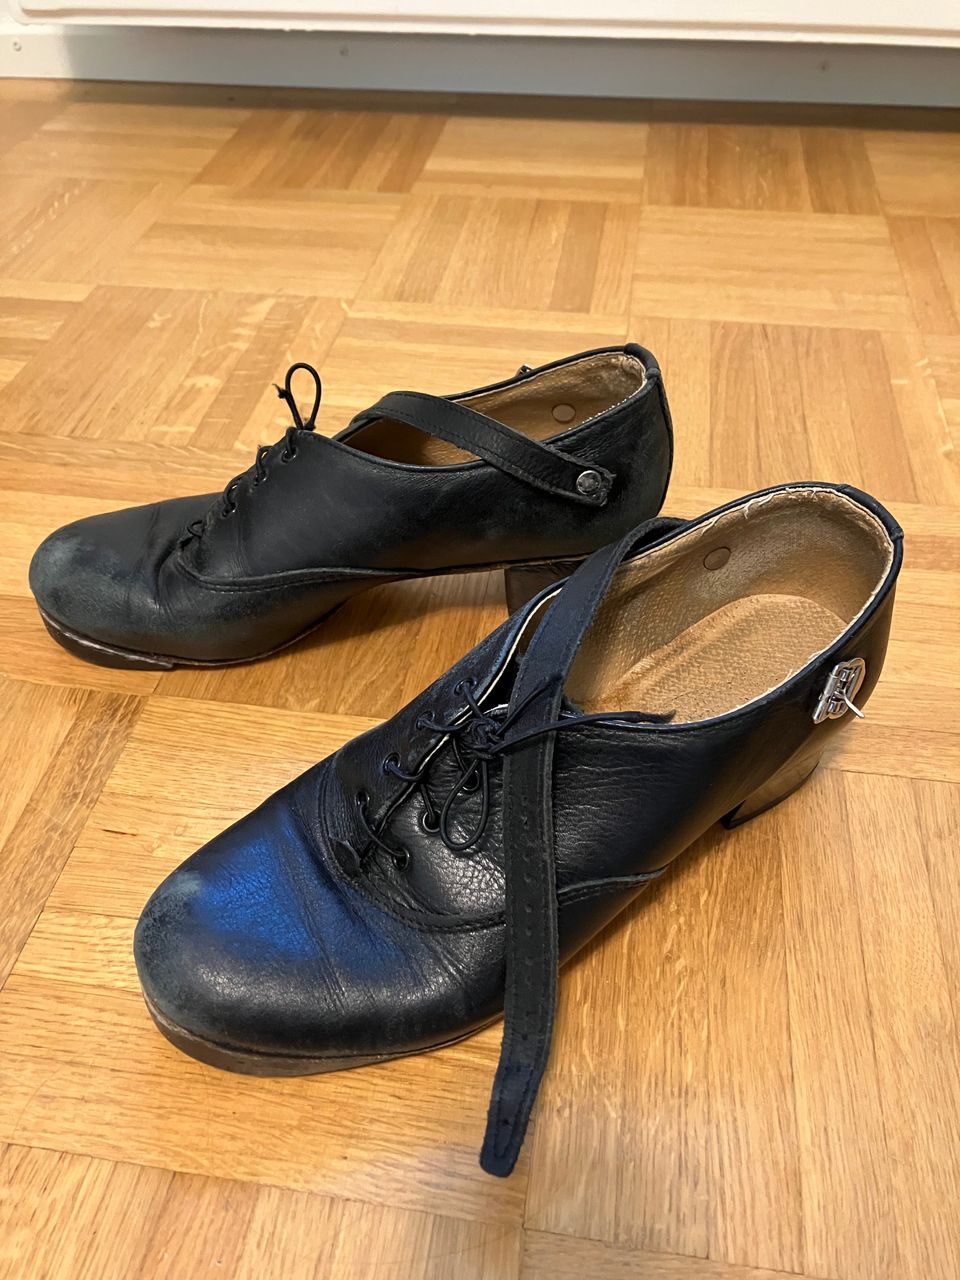 Irlantilaisen tanssin kengät